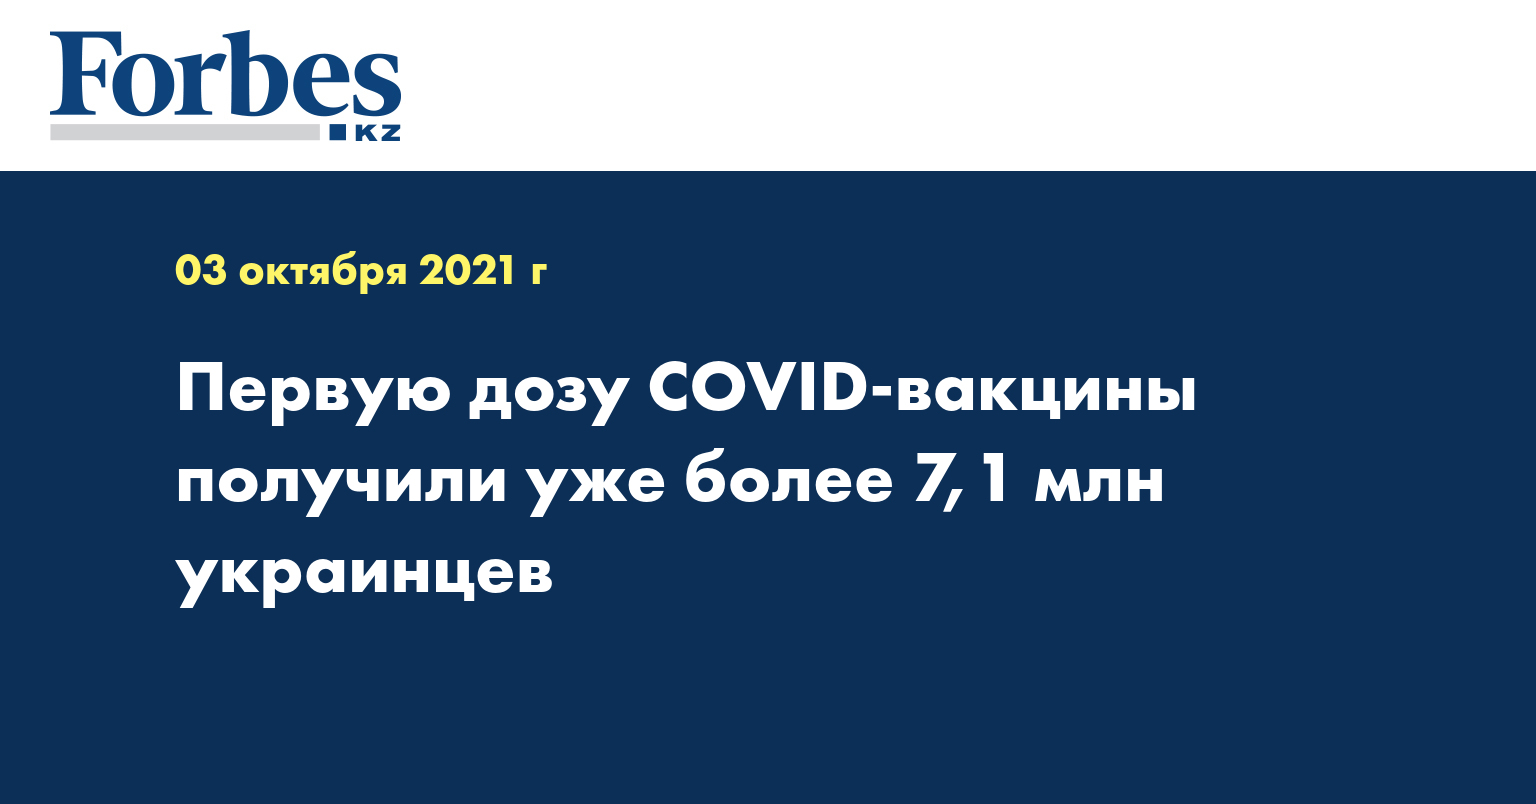 Первую дозу COVID-вакцины получили уже более 7,1 млн украинцев